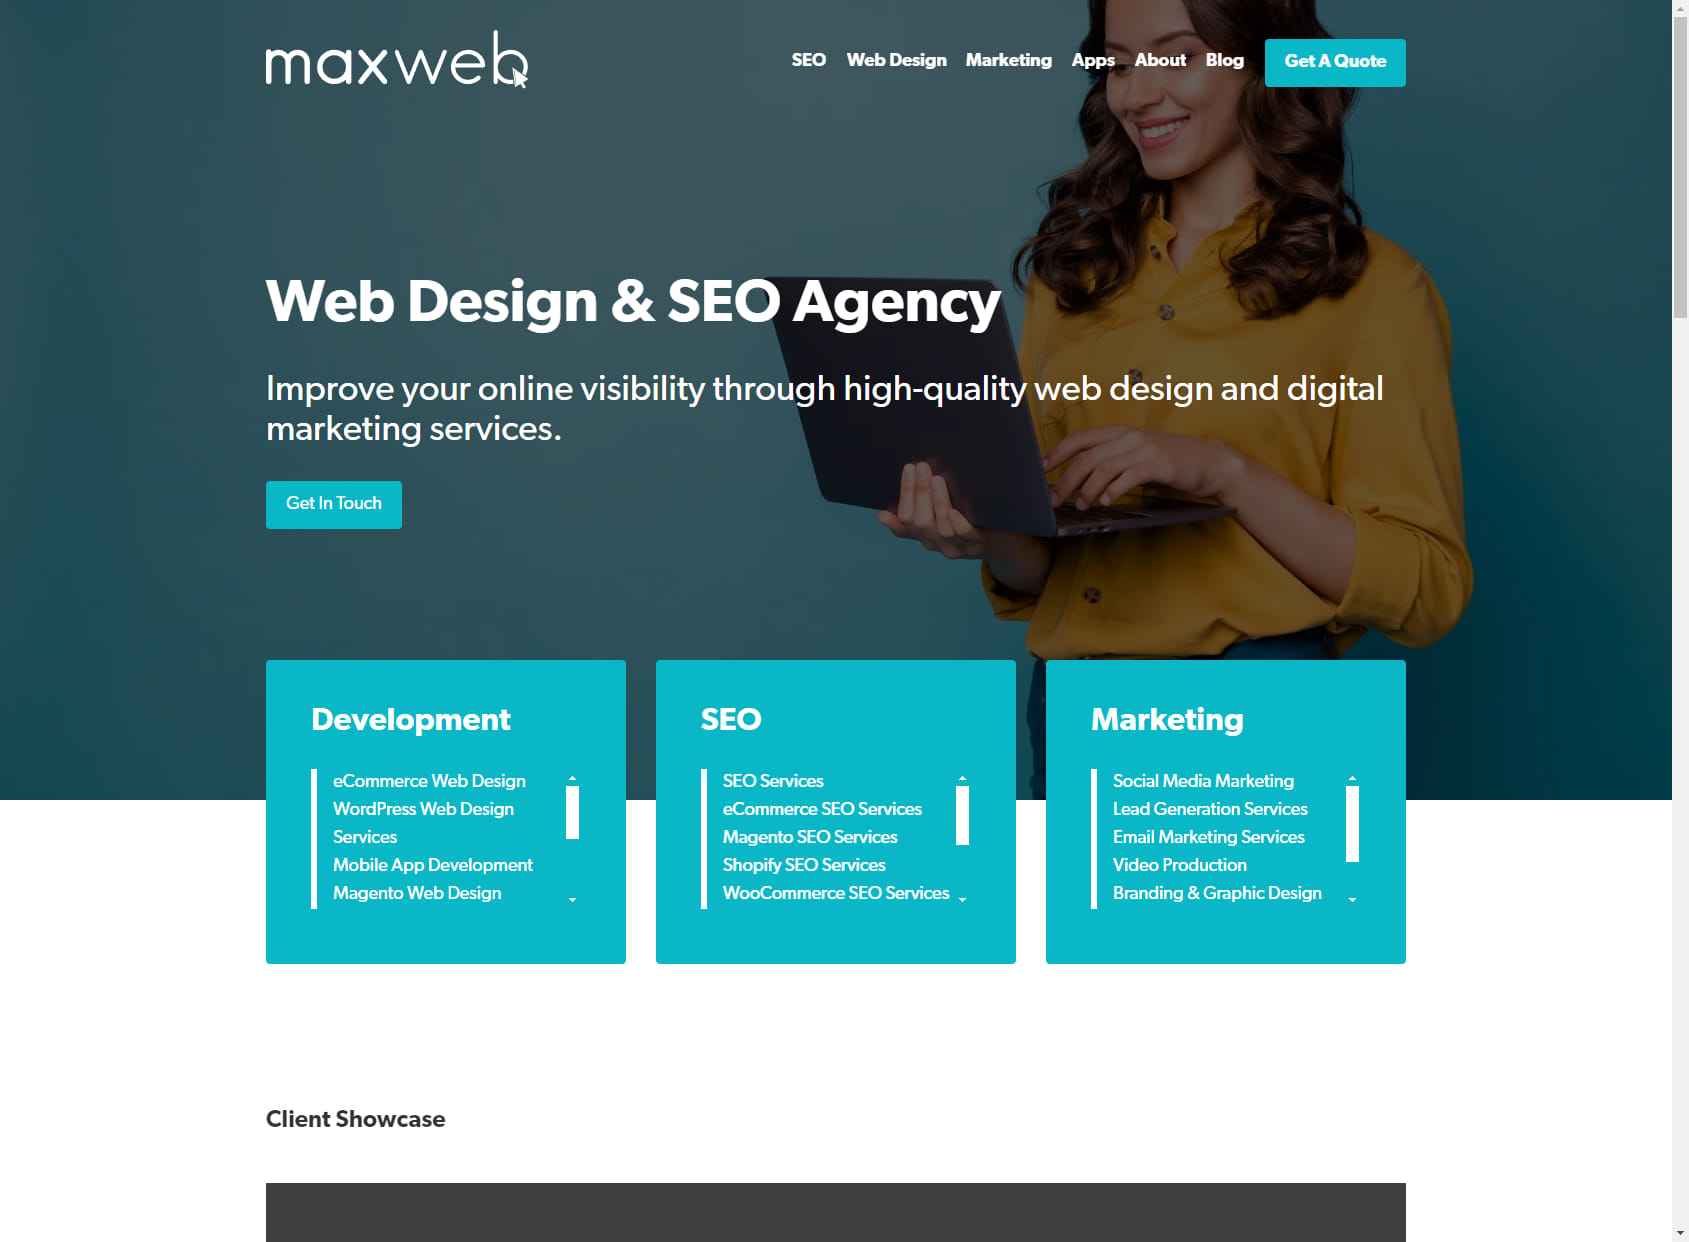 Max Web Solutions